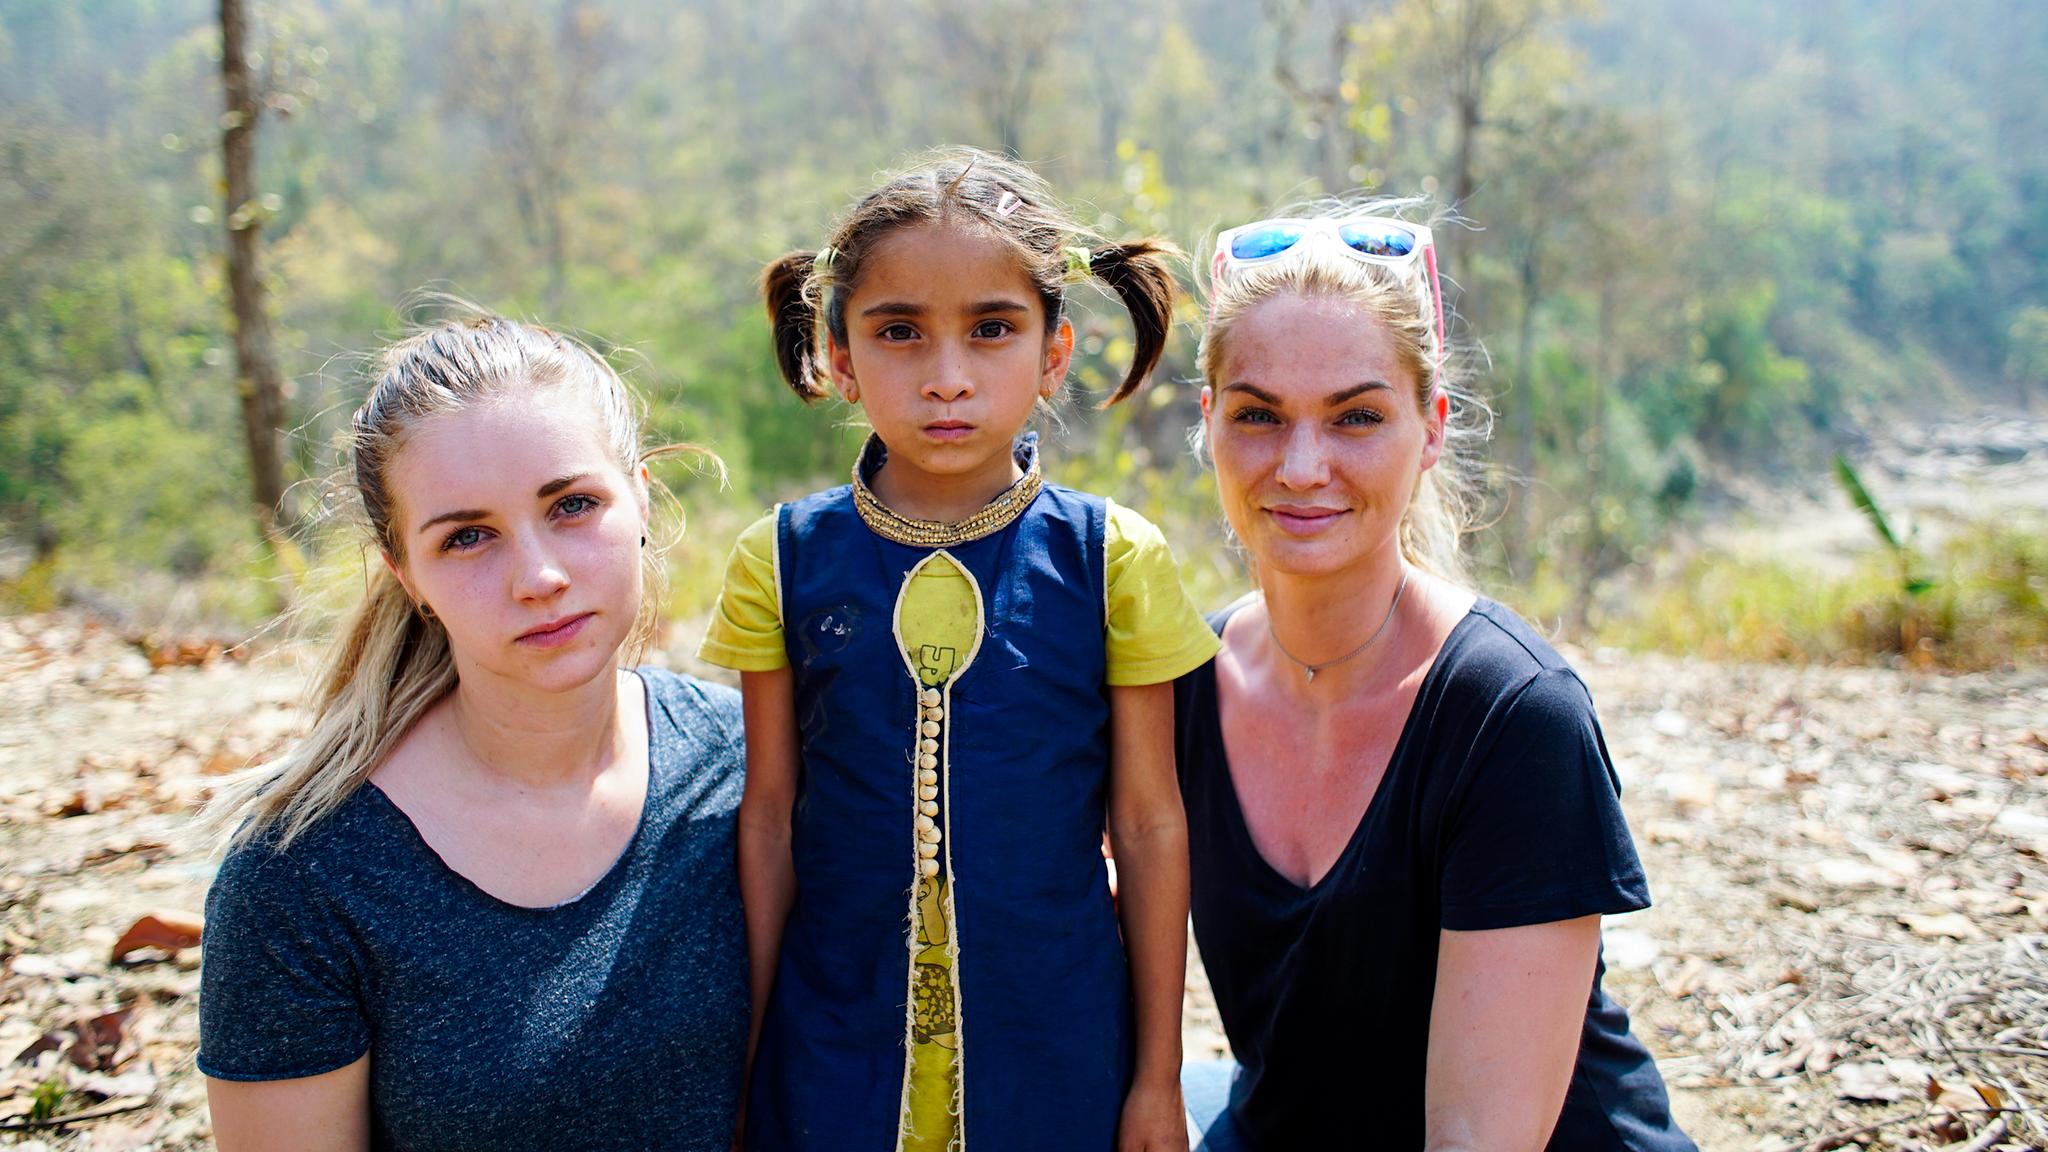 Marna Haugen Burøe, Sandhya BK og Mia Charlotte Johnsen i Nepal. Sandhya har ikke noe skikkelig etternavn, kun bokstavene som forteller at hun er kasteløs.